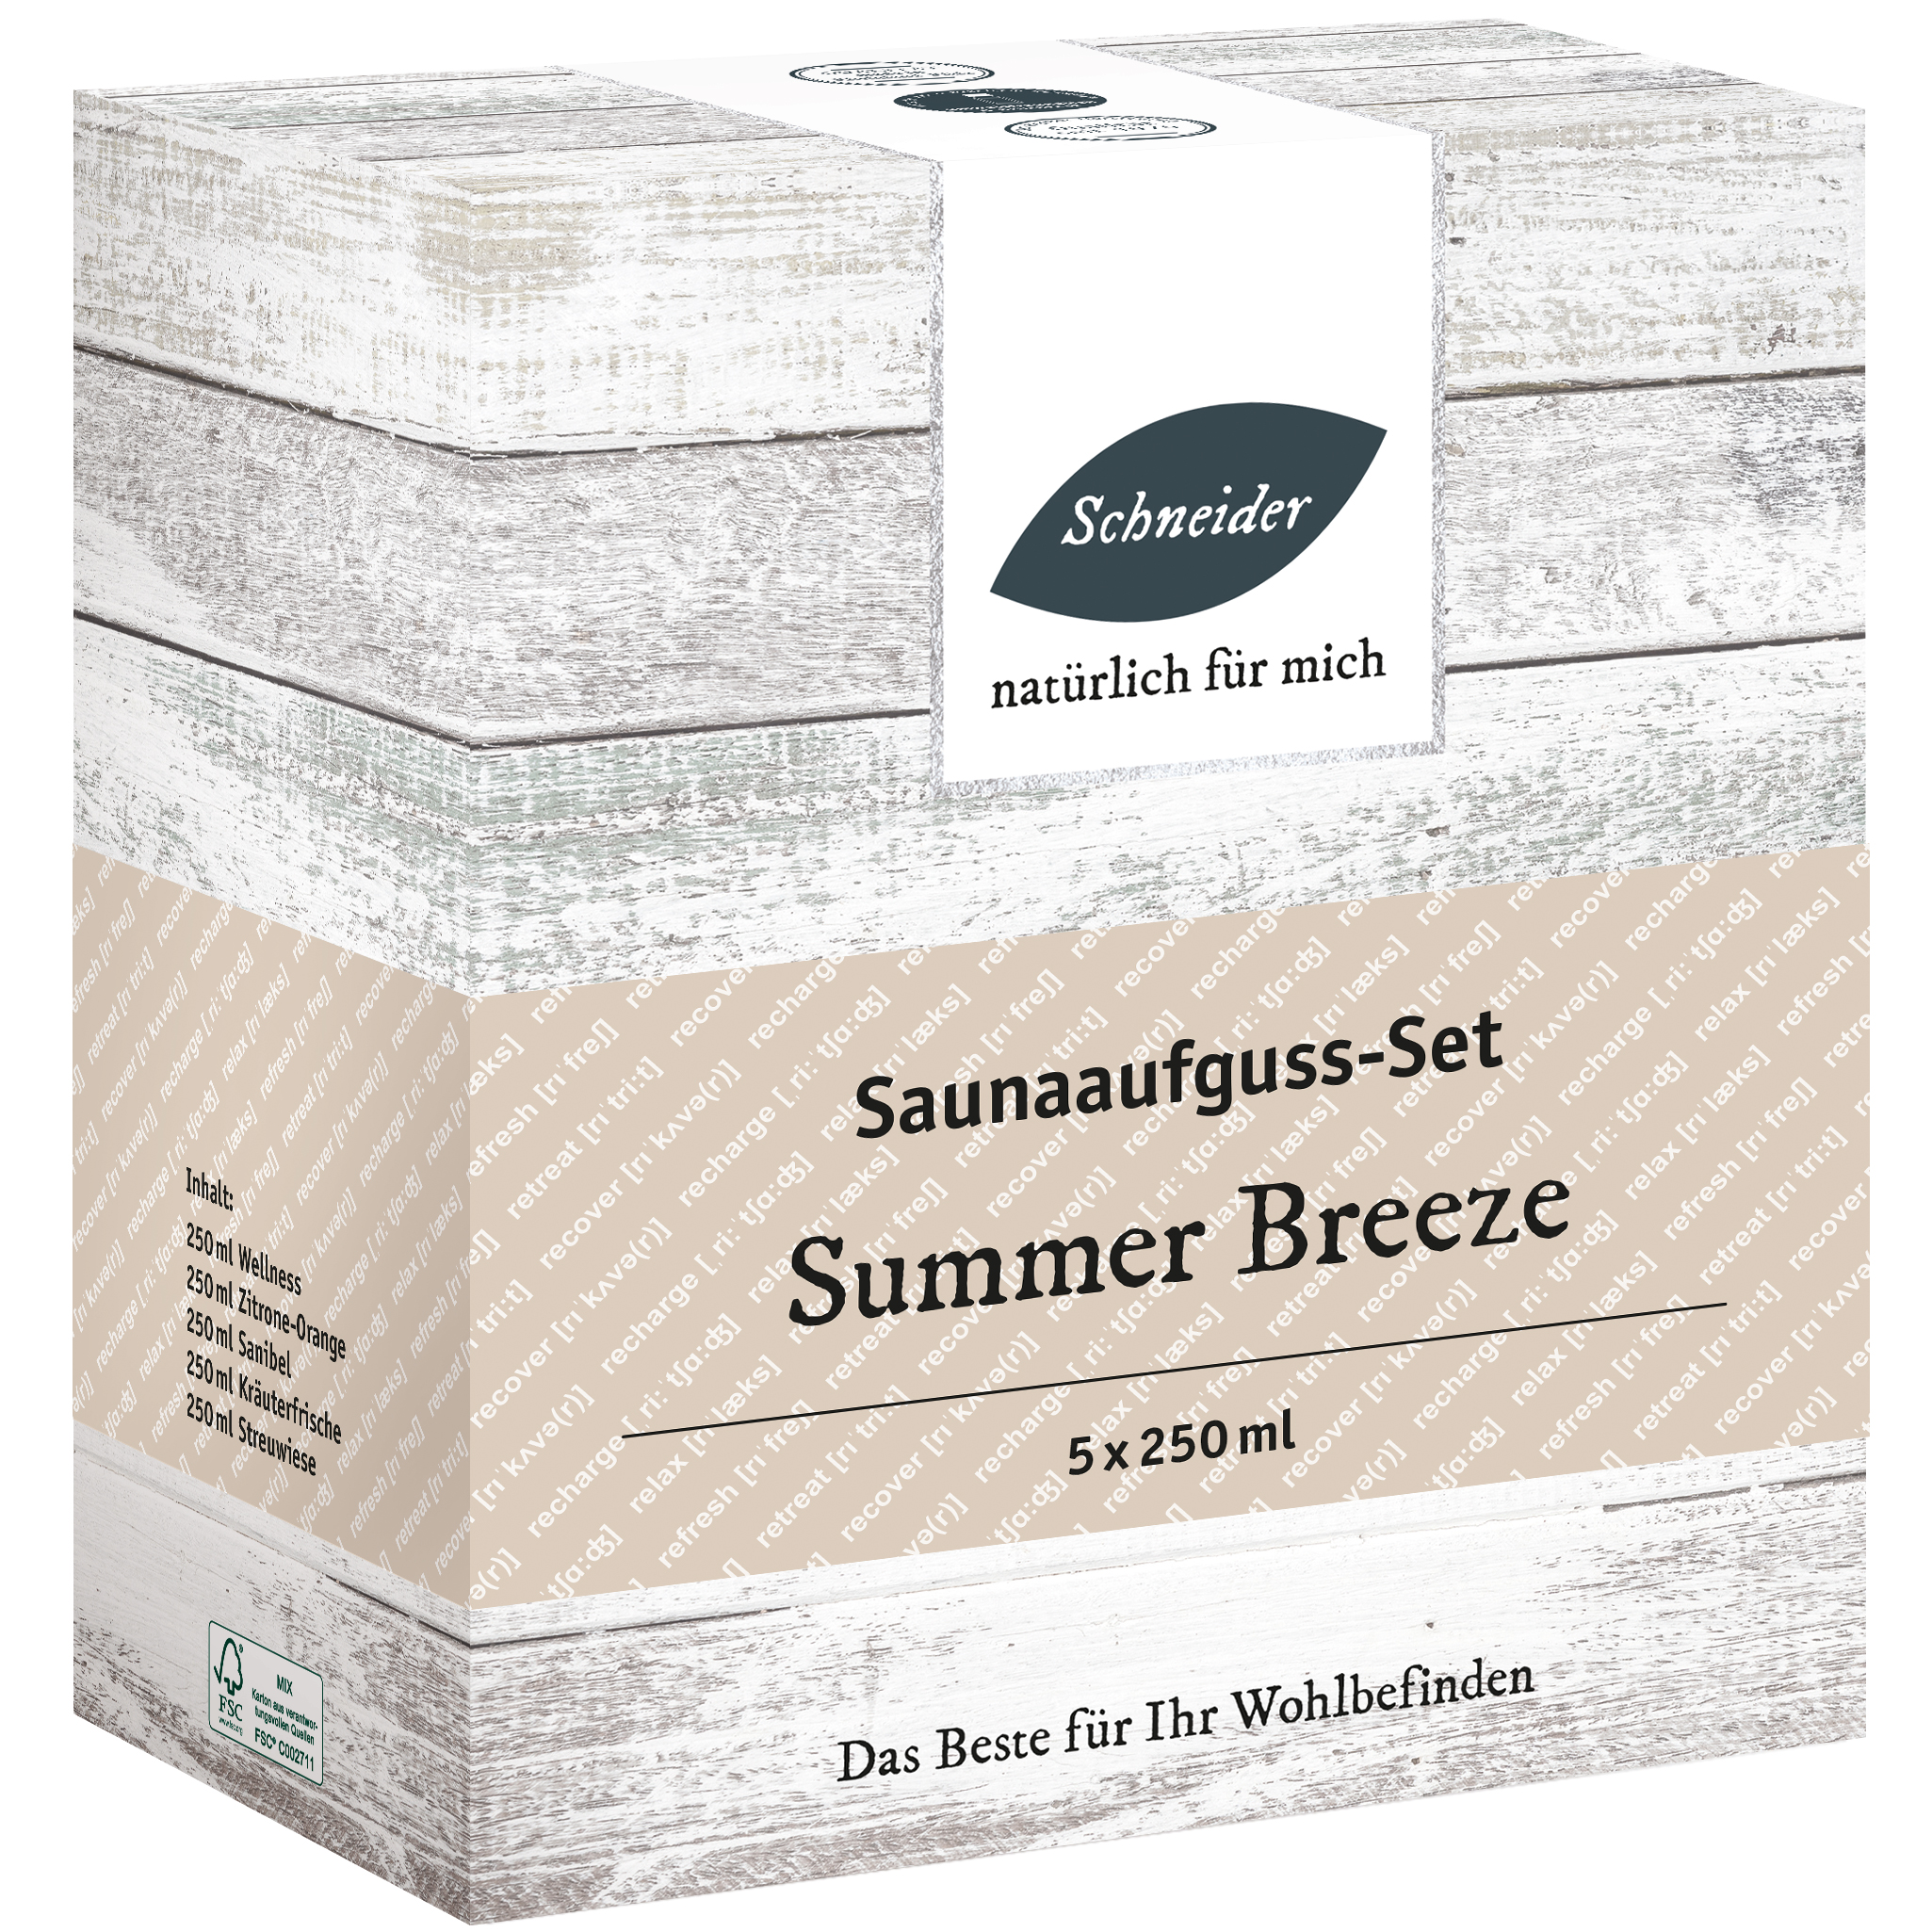 Saunaaufguss-Set - Summer Breeze